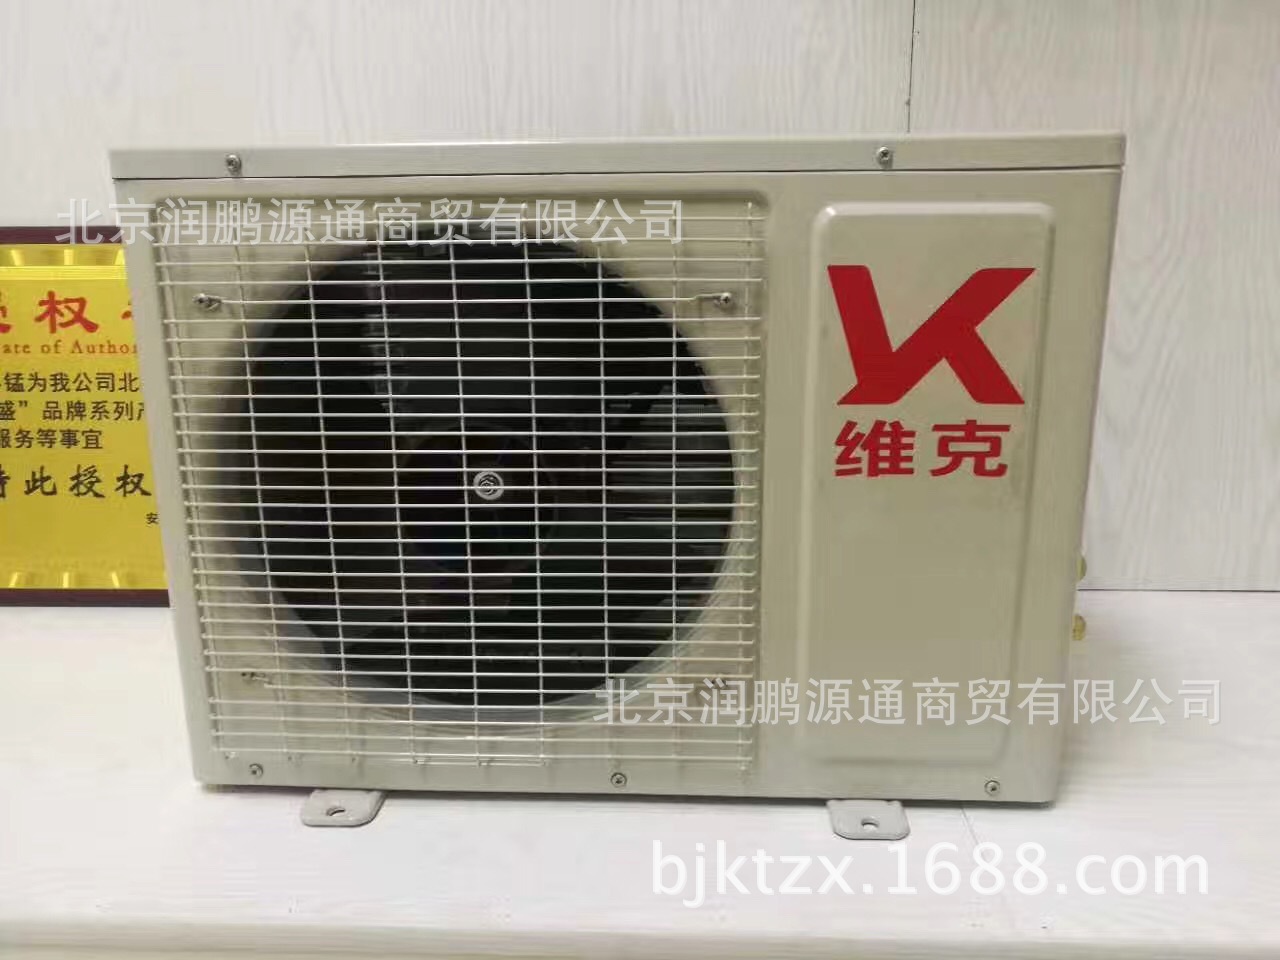 厂家直销KFR-48GW/DY-860FG一诺维克空调 定频壁挂式空调一件代示例图6